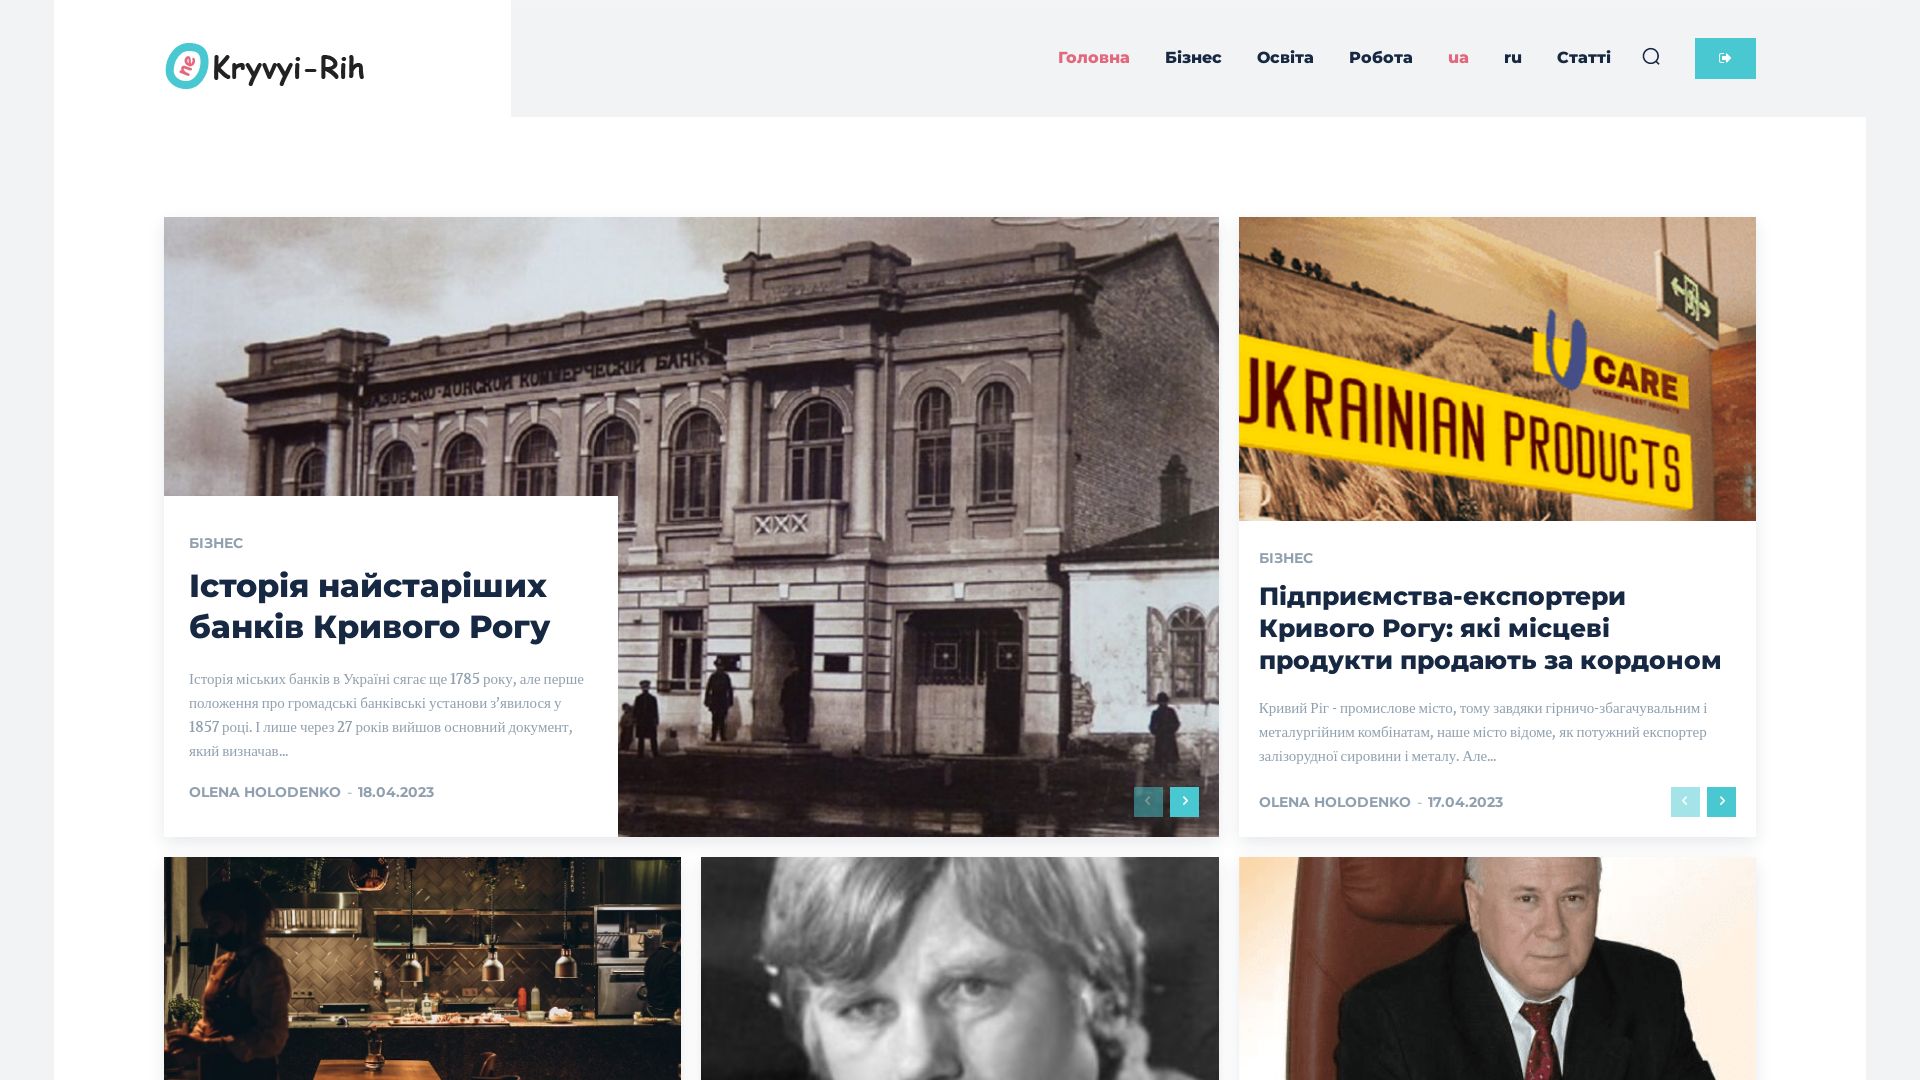 Website status kryvyi-rih.one is   ONLINE